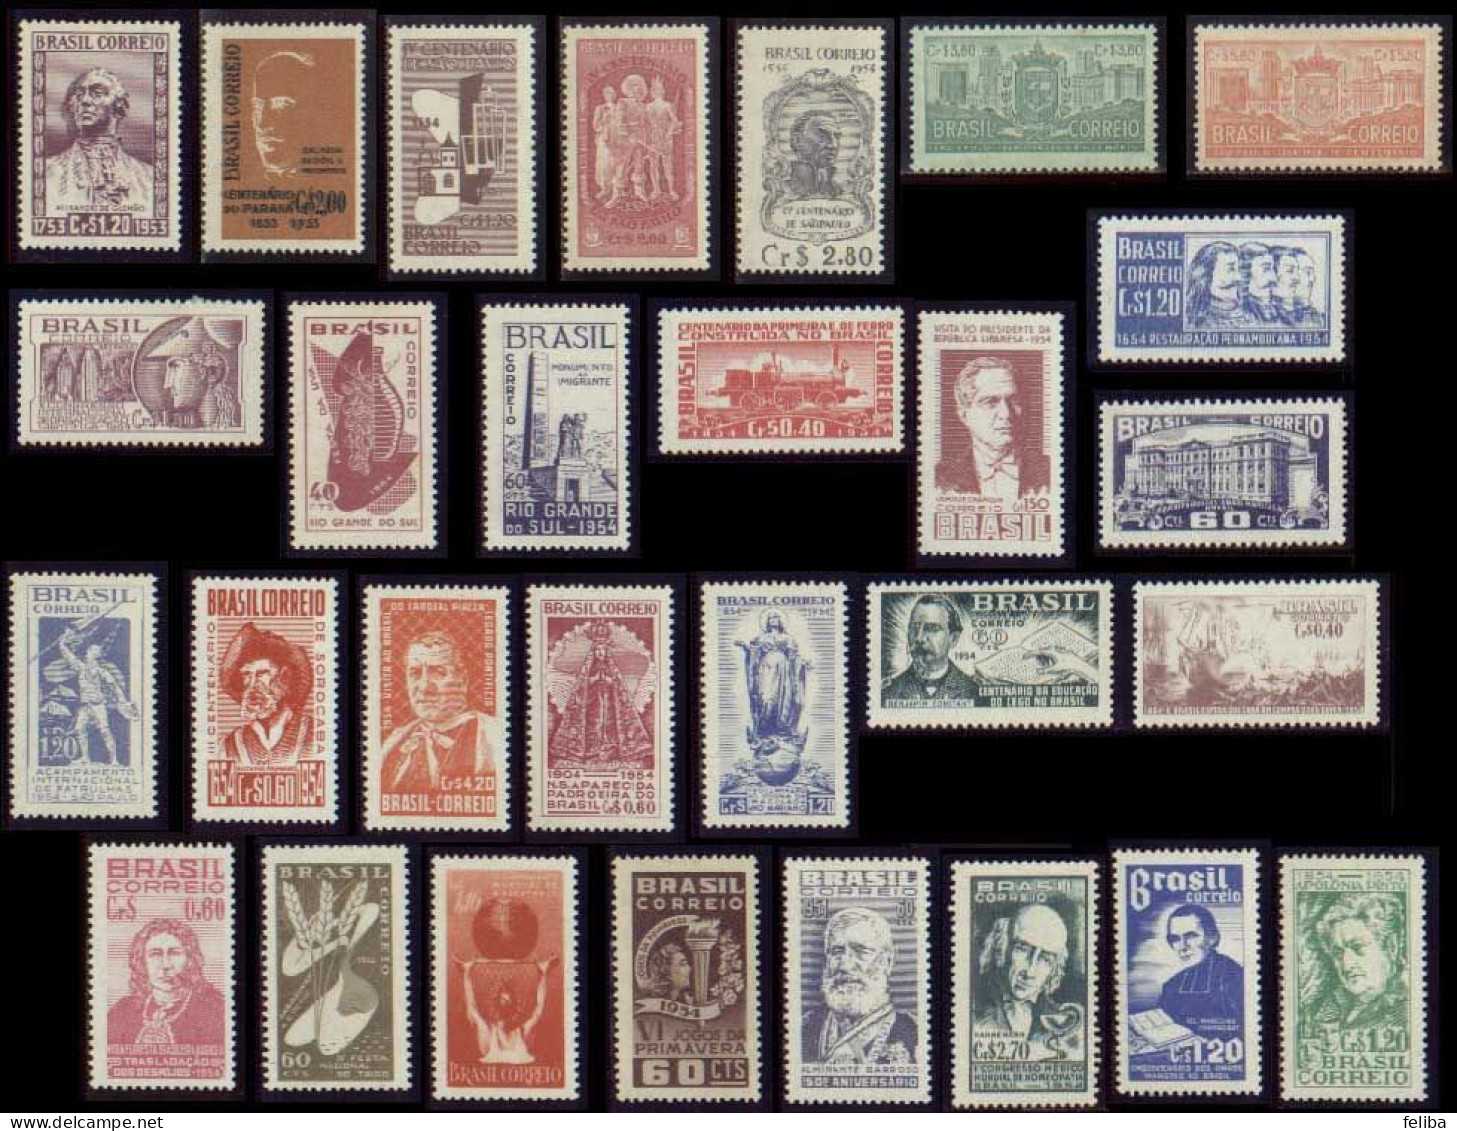 Brazil 1954 Unused Commemorative Stamps - Annate Complete